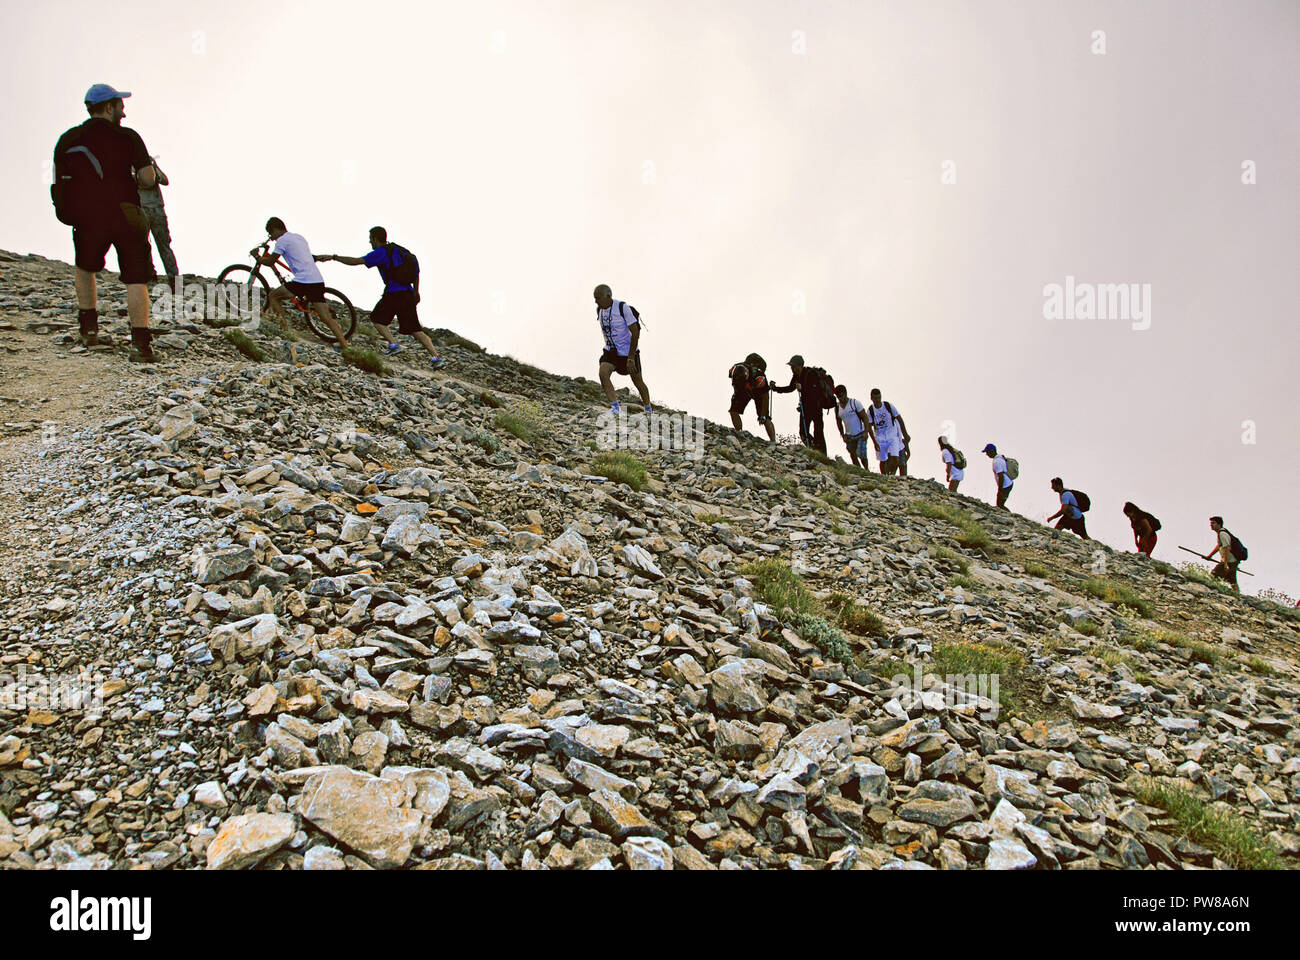 Griechenland, Berg Olymp, Kletterer auf dem Weg in der Nähe der Gipfel Mytikas (2,917 m. Höhe), auf dem Weg der E4 Europäischer Fernwanderweg, Jul. Stockfoto